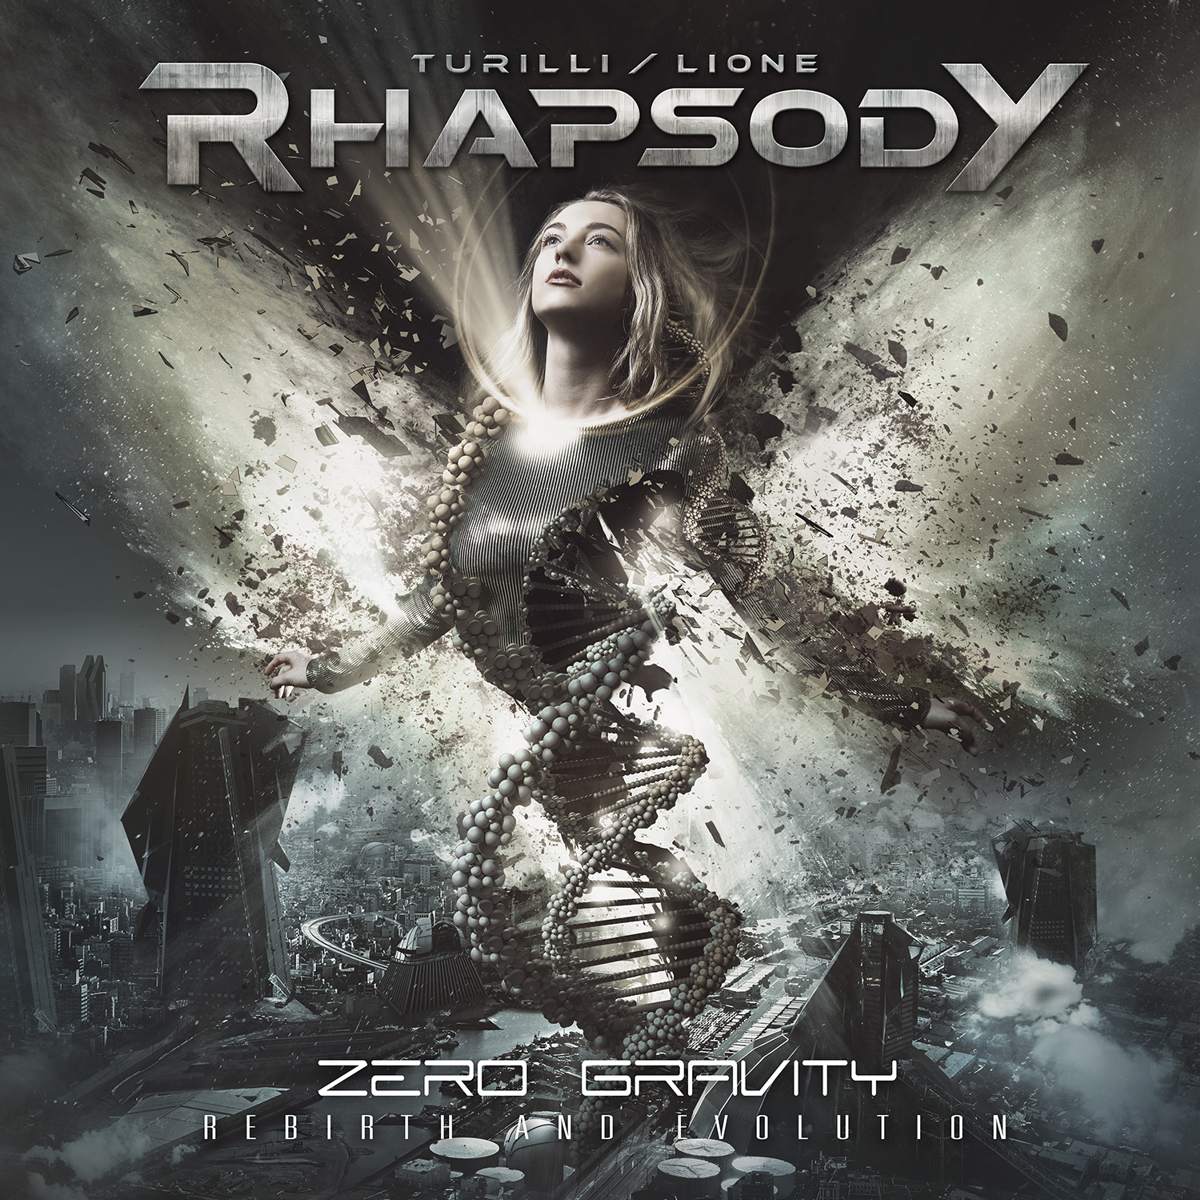 Turilli / Lione Rhapsody - Zero Gravity, Digi cd